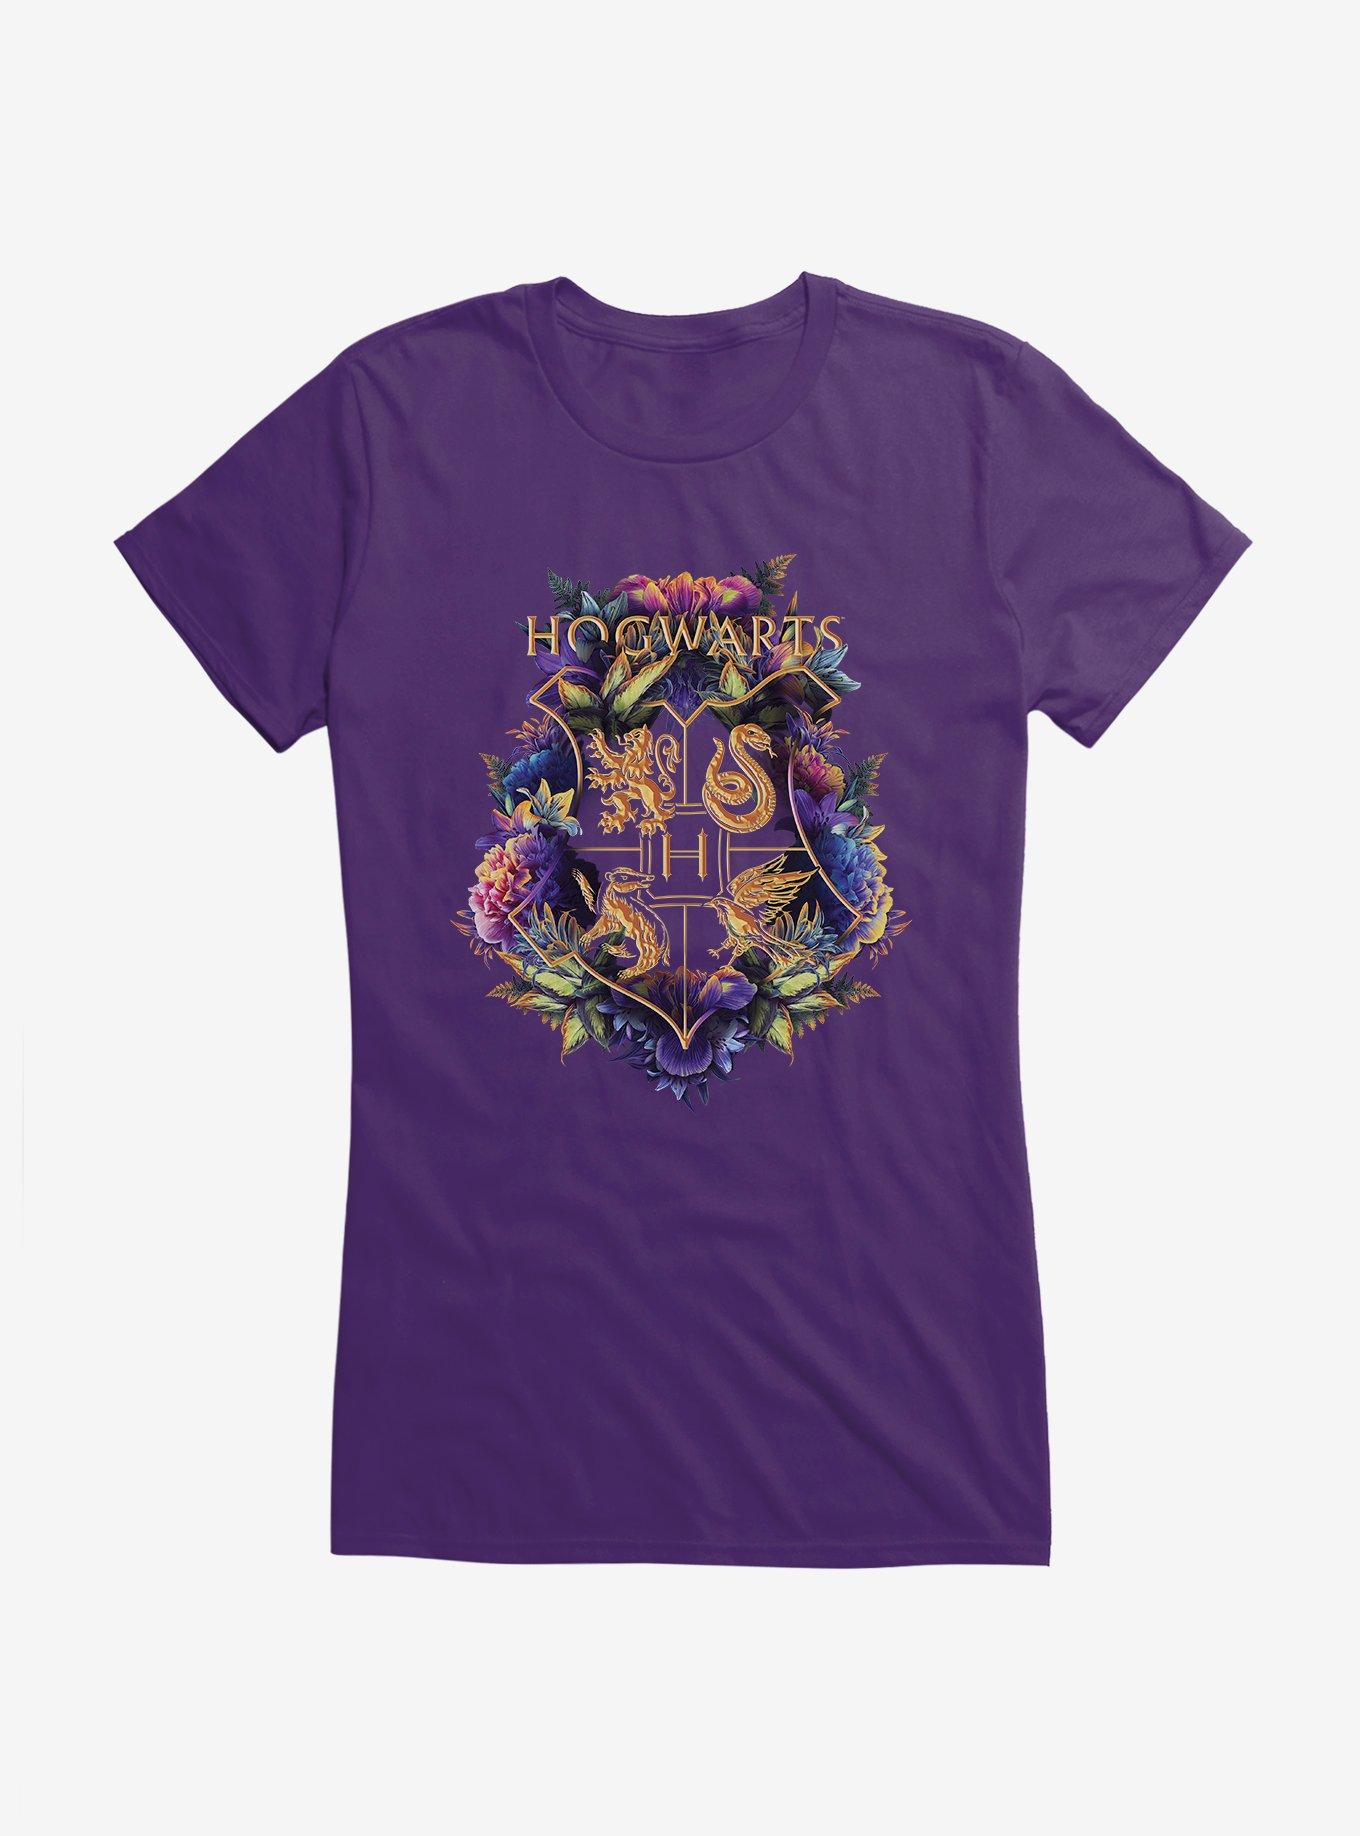 Harry Potter Hogwarts Floral Shield Girls T-Shirt, PURPLE, hi-res